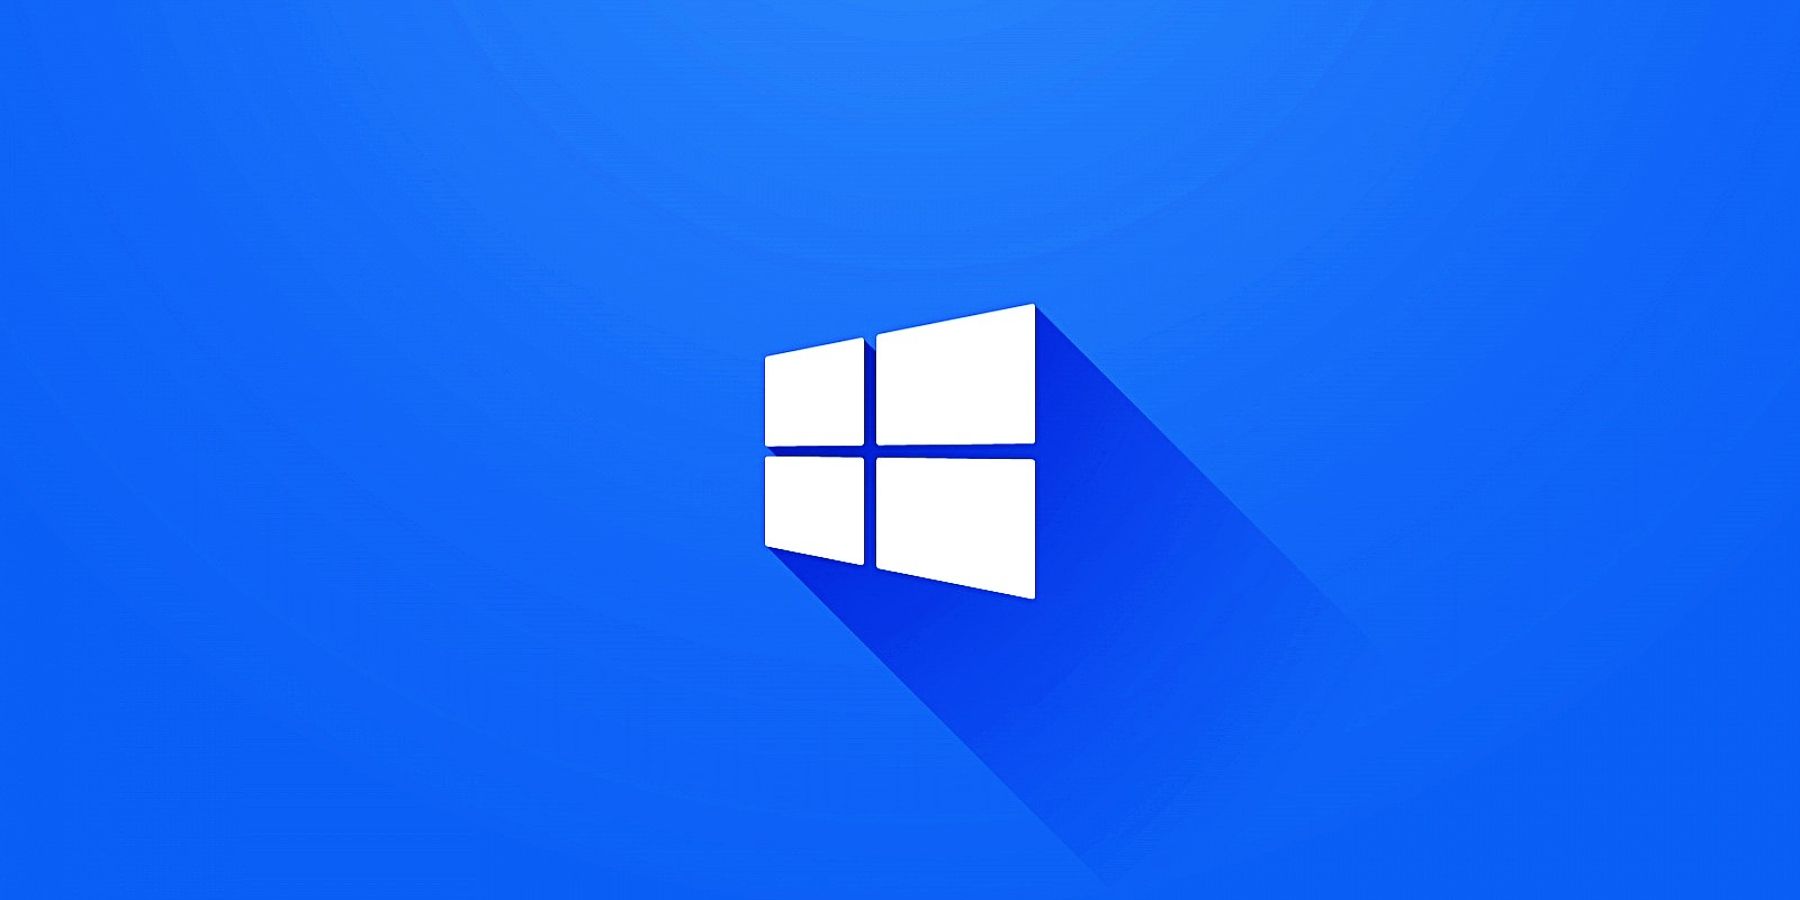 Windows 12: Hãy khám phá hệ điều hành mới nhất của Microsoft với giao diện đẹp và tính năng độc đáo. Windows 12 sẽ đem đến cho bạn một trải nghiệm tuyệt vời khi sử dụng máy tính.